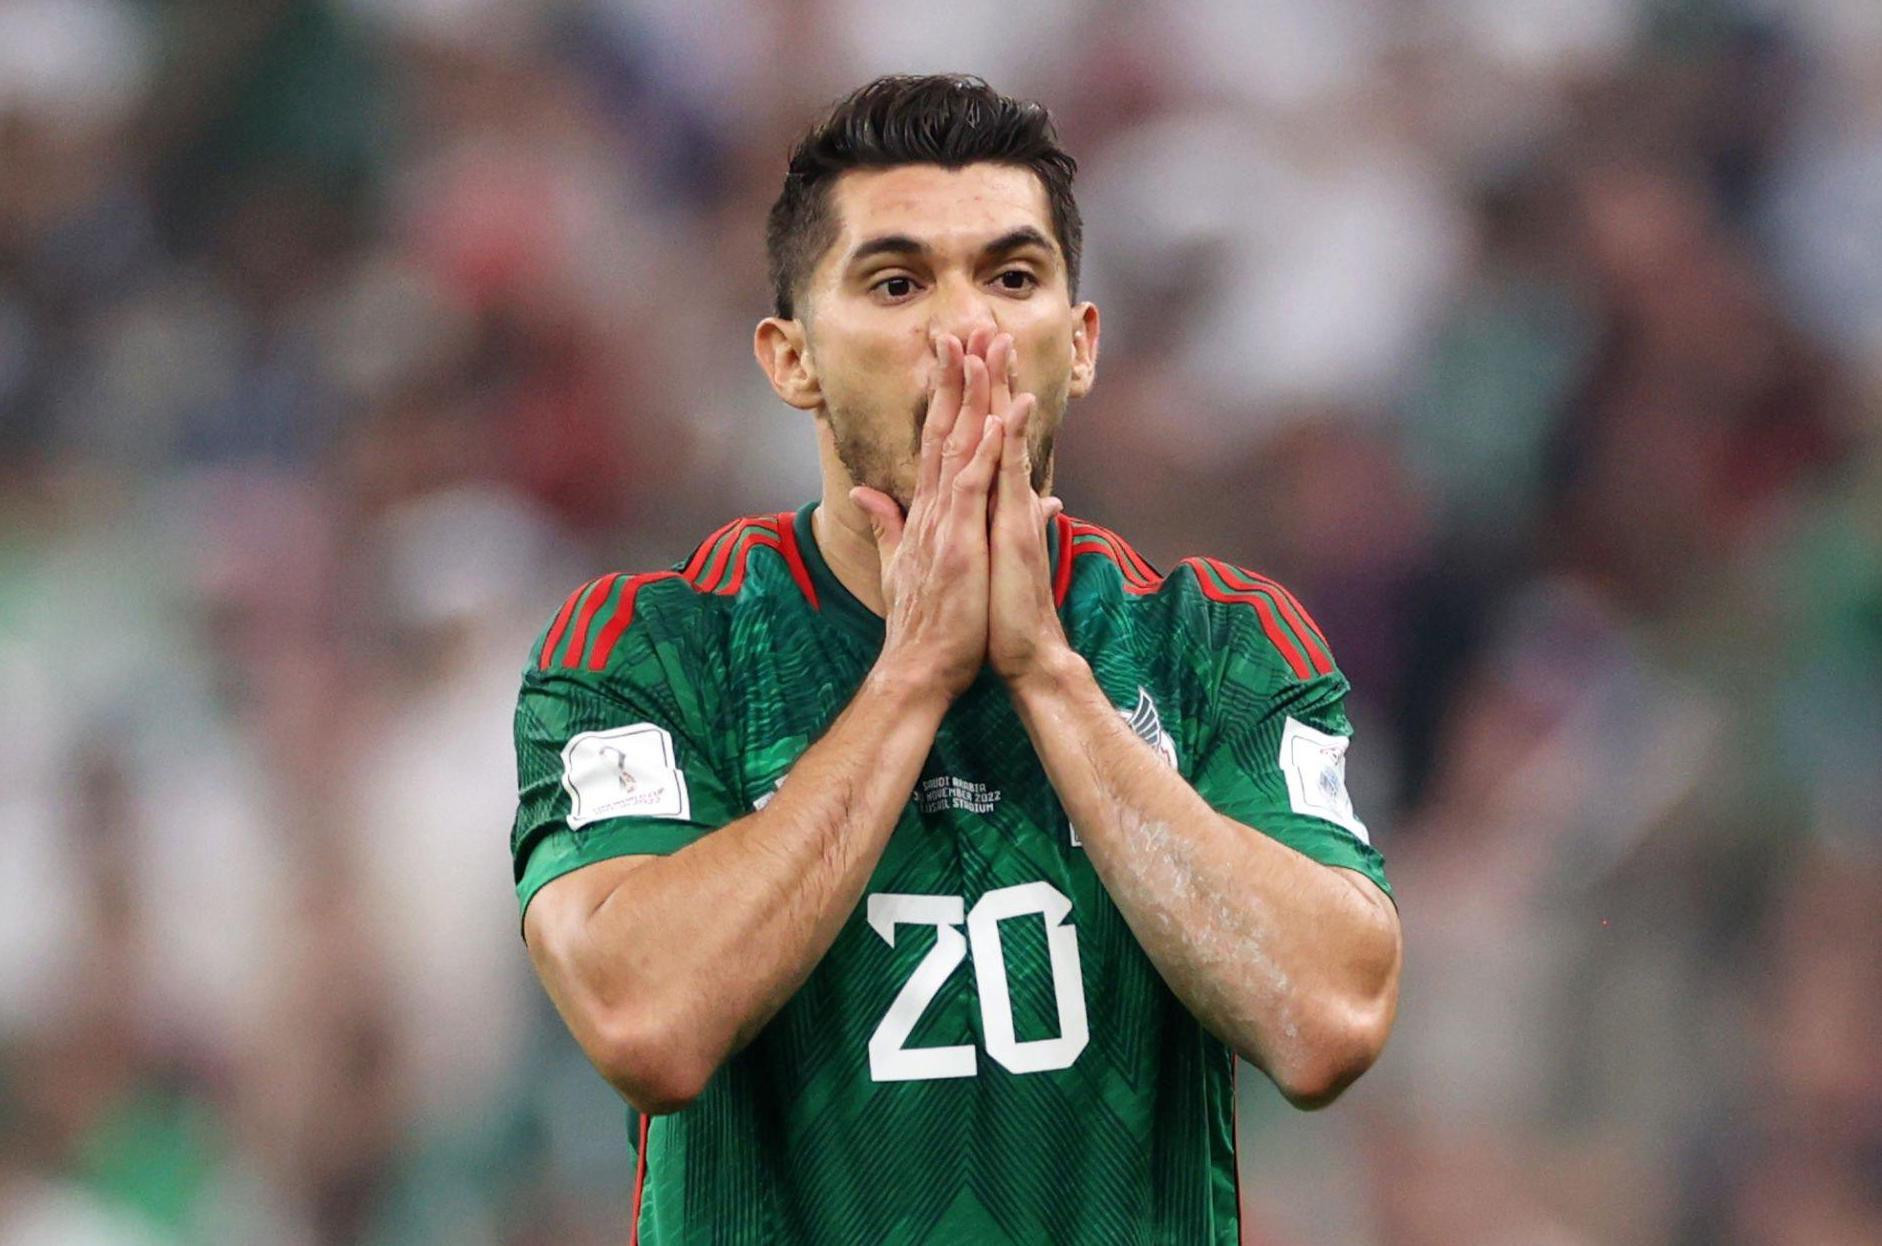 Ghi thiếu 1 bàn, Mexico bị loại cay đắng - 1